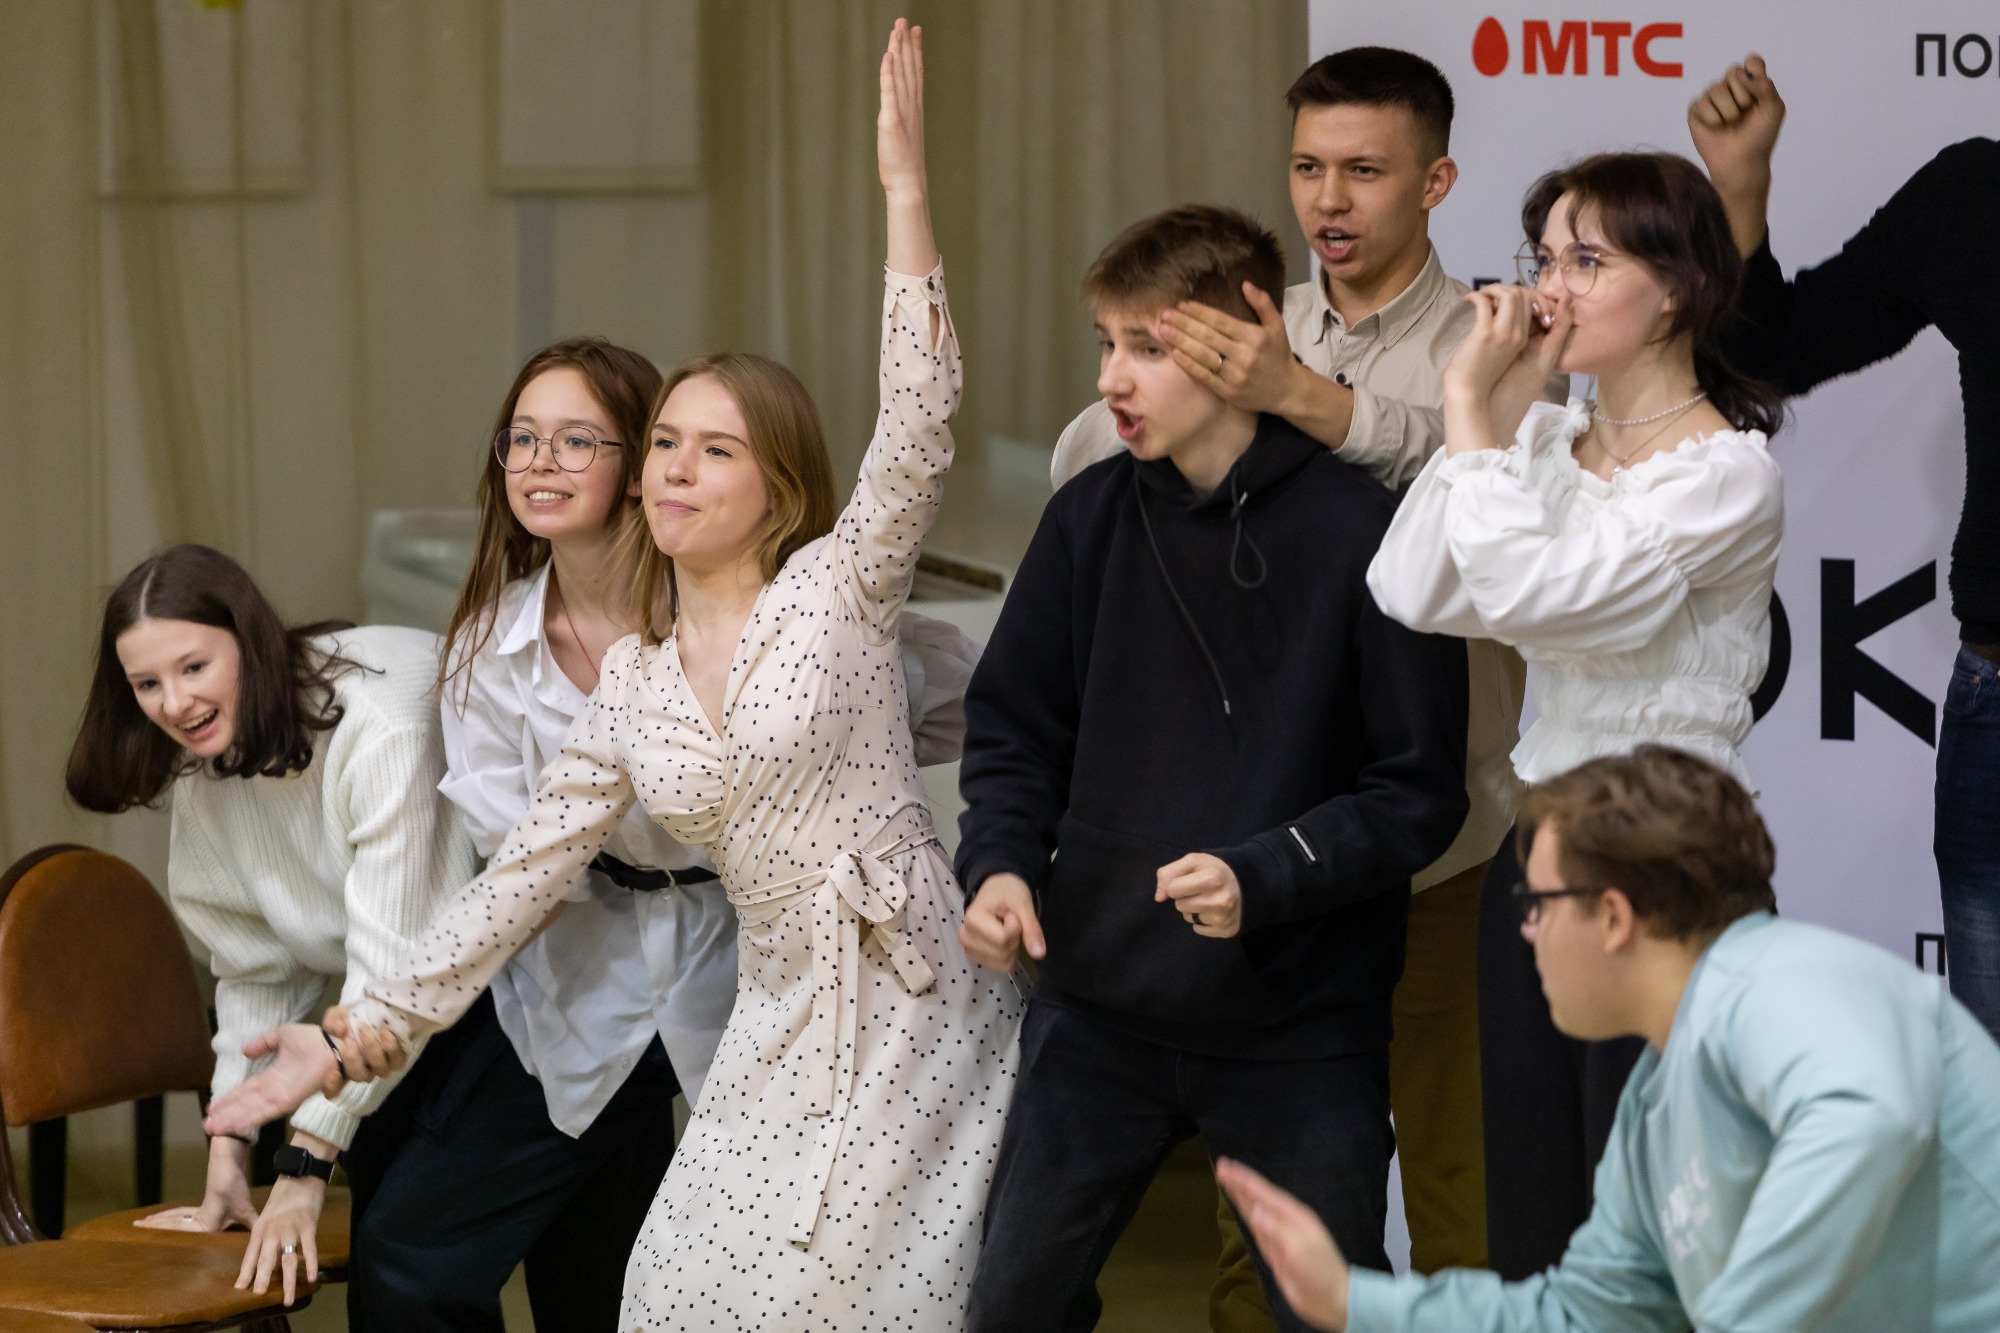 Две школьницы из Томска вошли в число лучших по итогам онлайн-консультаций в ГИТИС